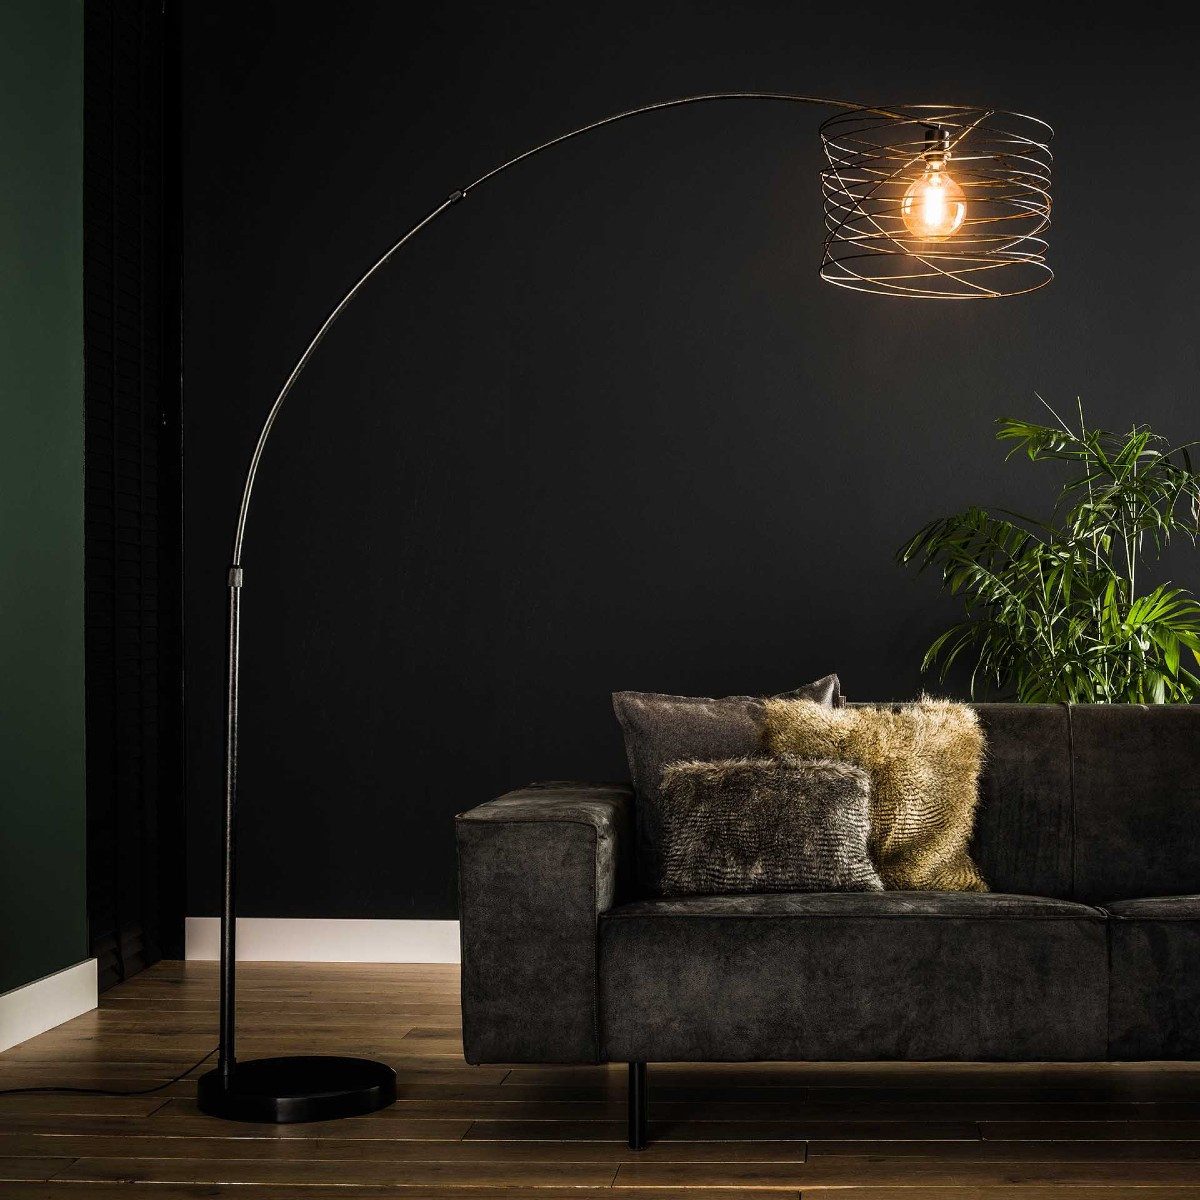 Liadomo Bogenlampe Mammot, ohne Leuchtmittel, ideal für das Wohnzimmer, E27, Metallschirm, Marmorfuß